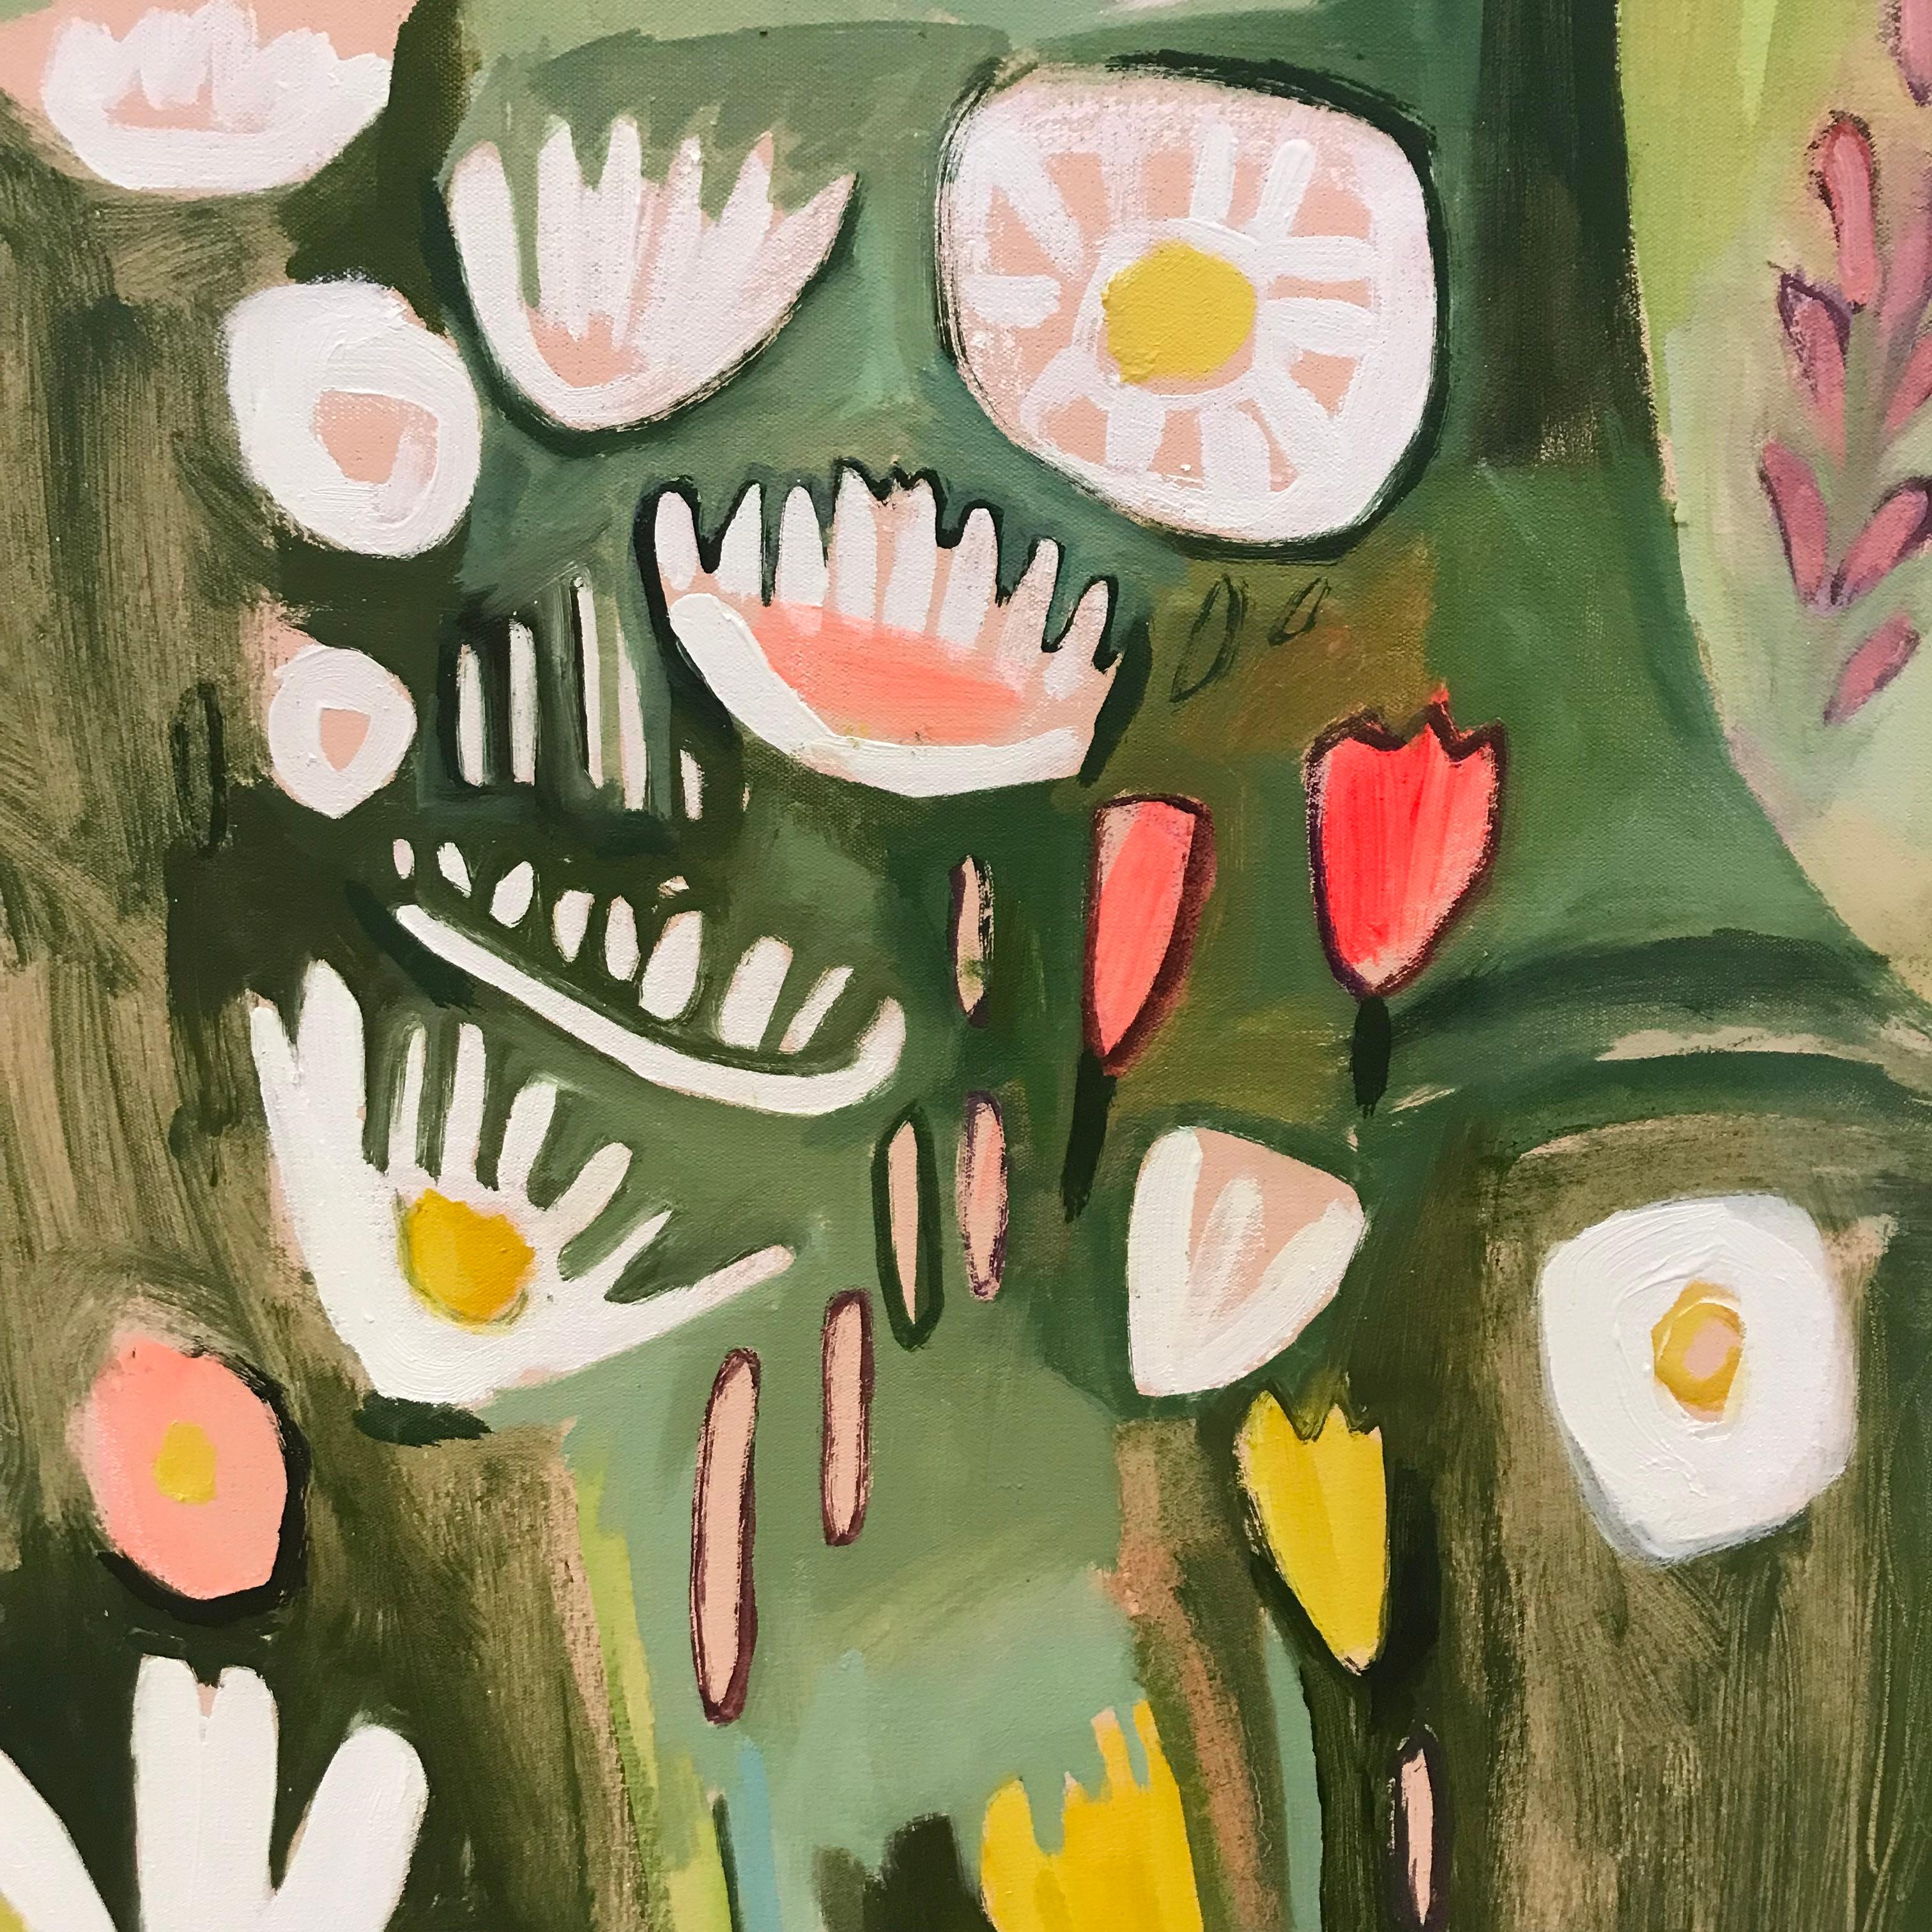 Dieses Gemälde in zarten, sommerlichen Pastelltönen stellt eine traditionelle Wildblumenwiese in voller Blüte dar. Die Farben stammen von den sanften grünen Gräsern und den hübschen Rosa- und Gelbtönen der einheimischen Wildblumen auf dieser Wiese.